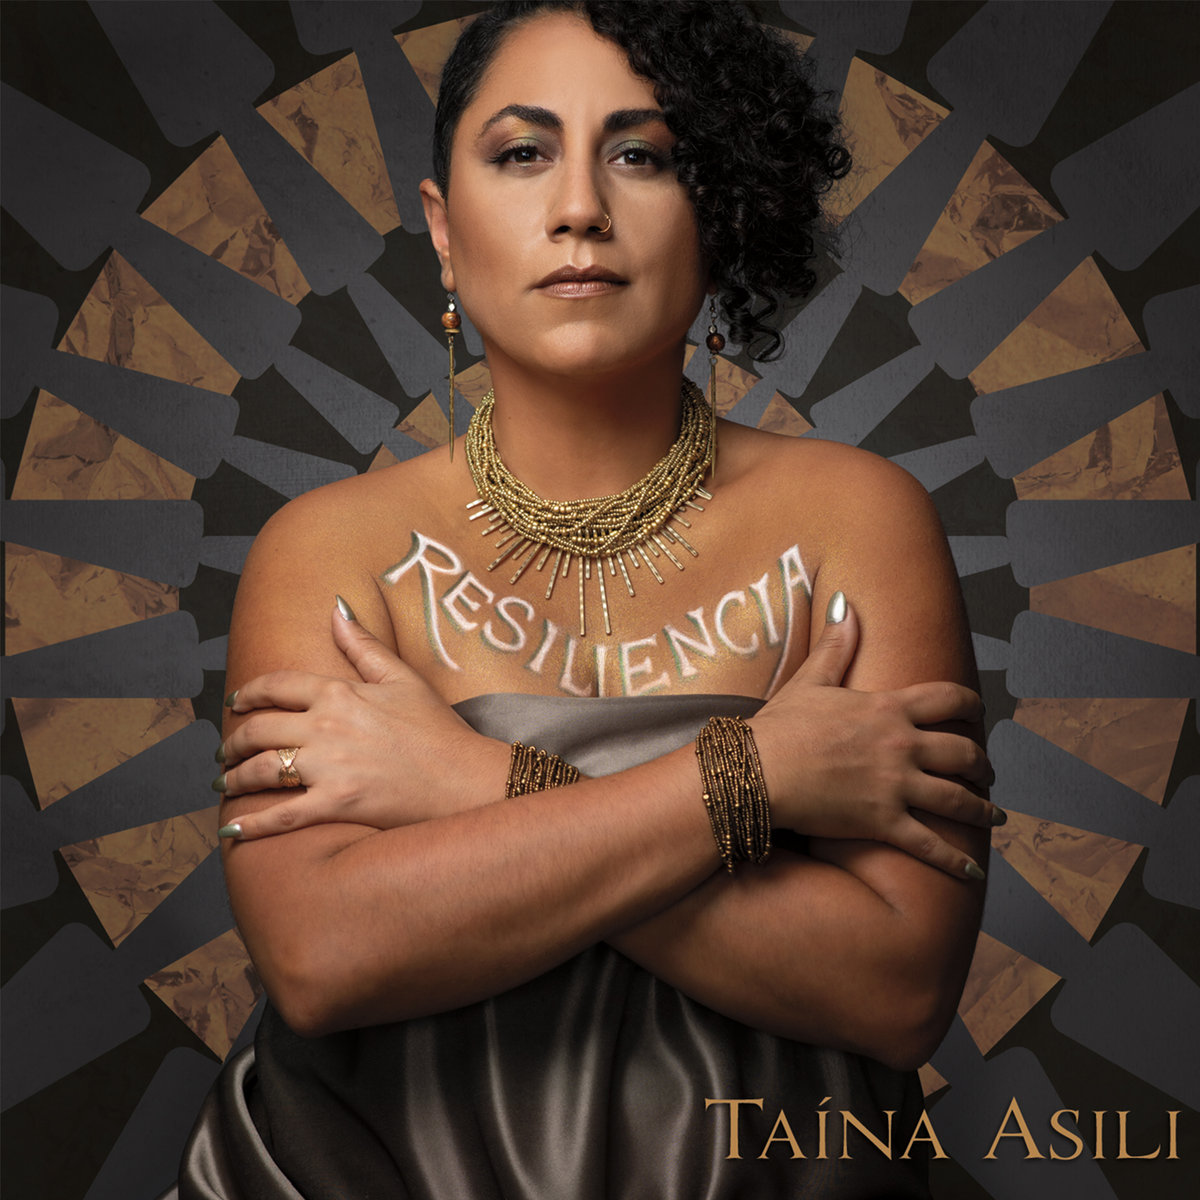 TAINA ASILI - RESILIENCIA album artwork